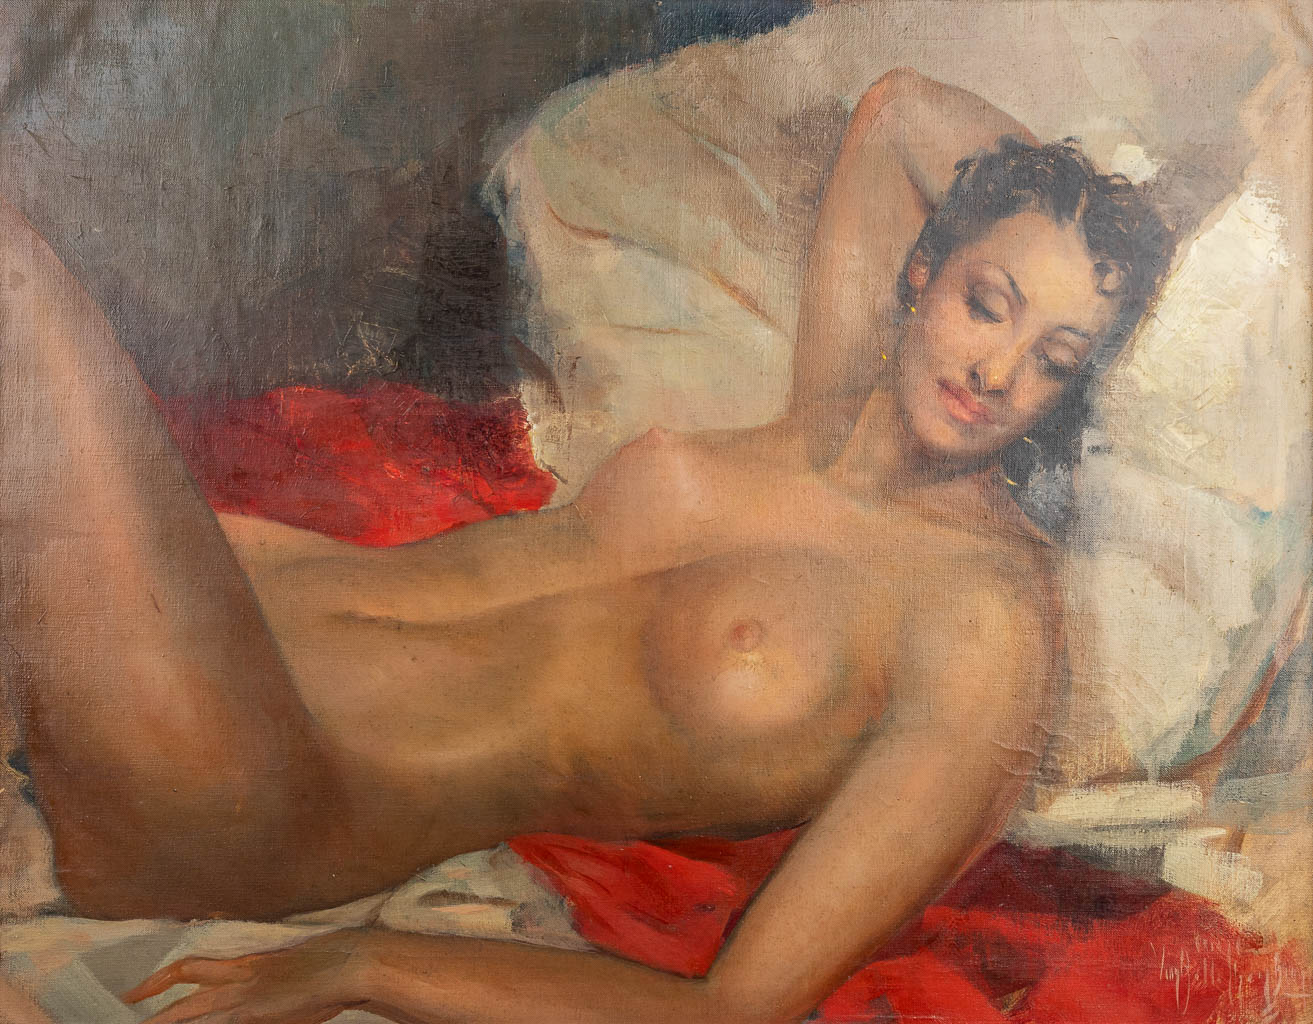 Aimé VAN BELLEGHEM (1922-1996) 'Naked' a painting, oil on canvas. (90 x 70 cm)